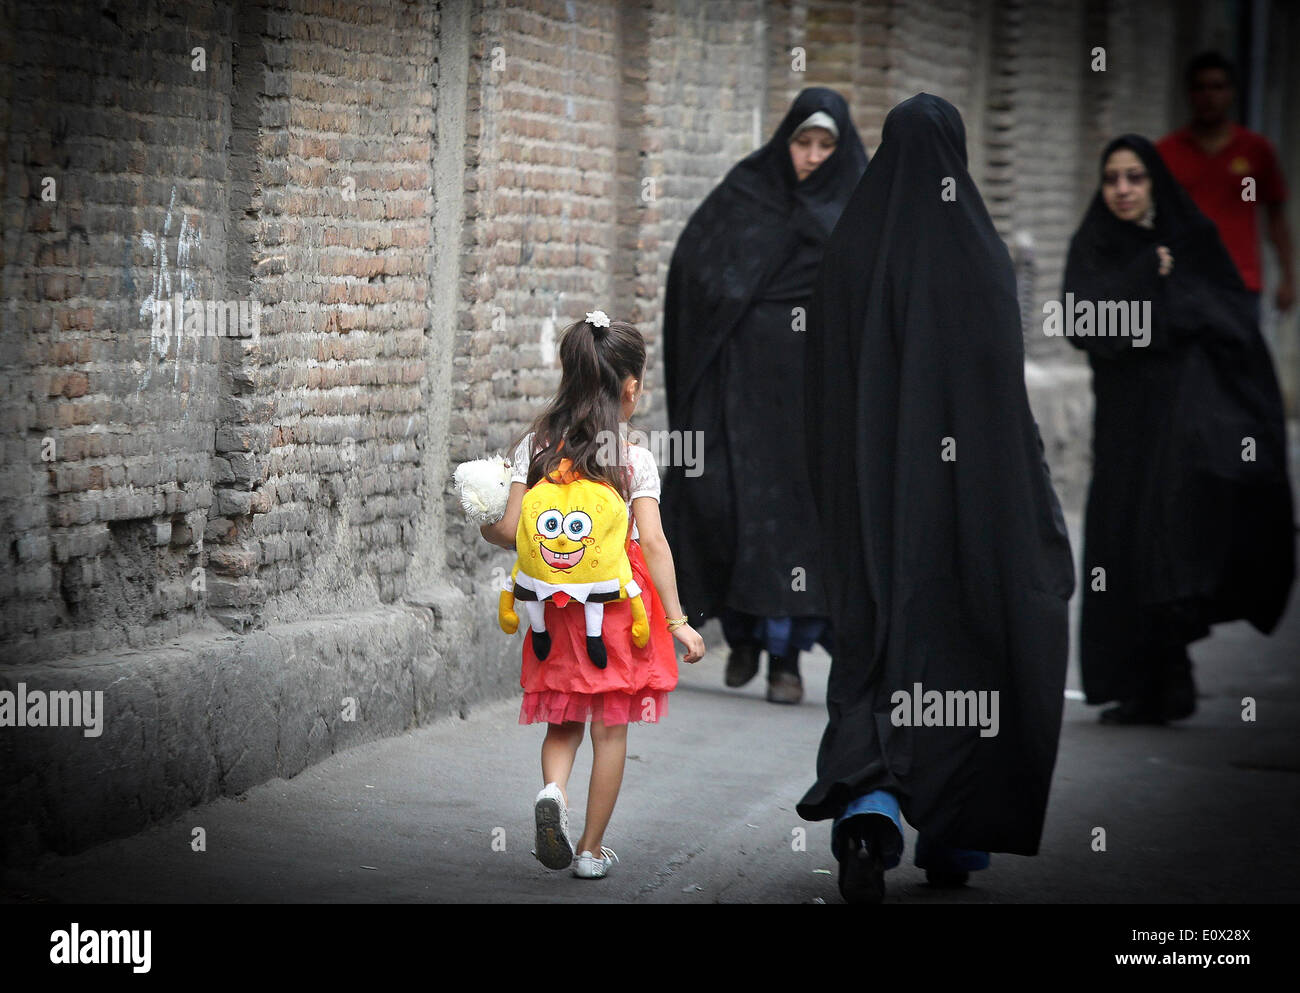 Téhéran, Iran. 19 mai, 2014. Les femmes portant le tchador à pied dans une rue de Téhéran, capitale de l'Iran, le 19 mai 2014. Tchador est un genre de Hijab officiel pour de nombreuses femmes en Iran dans les lieux publics. Le Hijab, une couverture des cheveux et le corps pour les femmes, a été tenu en public après la révolution islamique en Iran en 1979. © Ahmad Halabisaz/Xinhua/Alamy Live News Banque D'Images